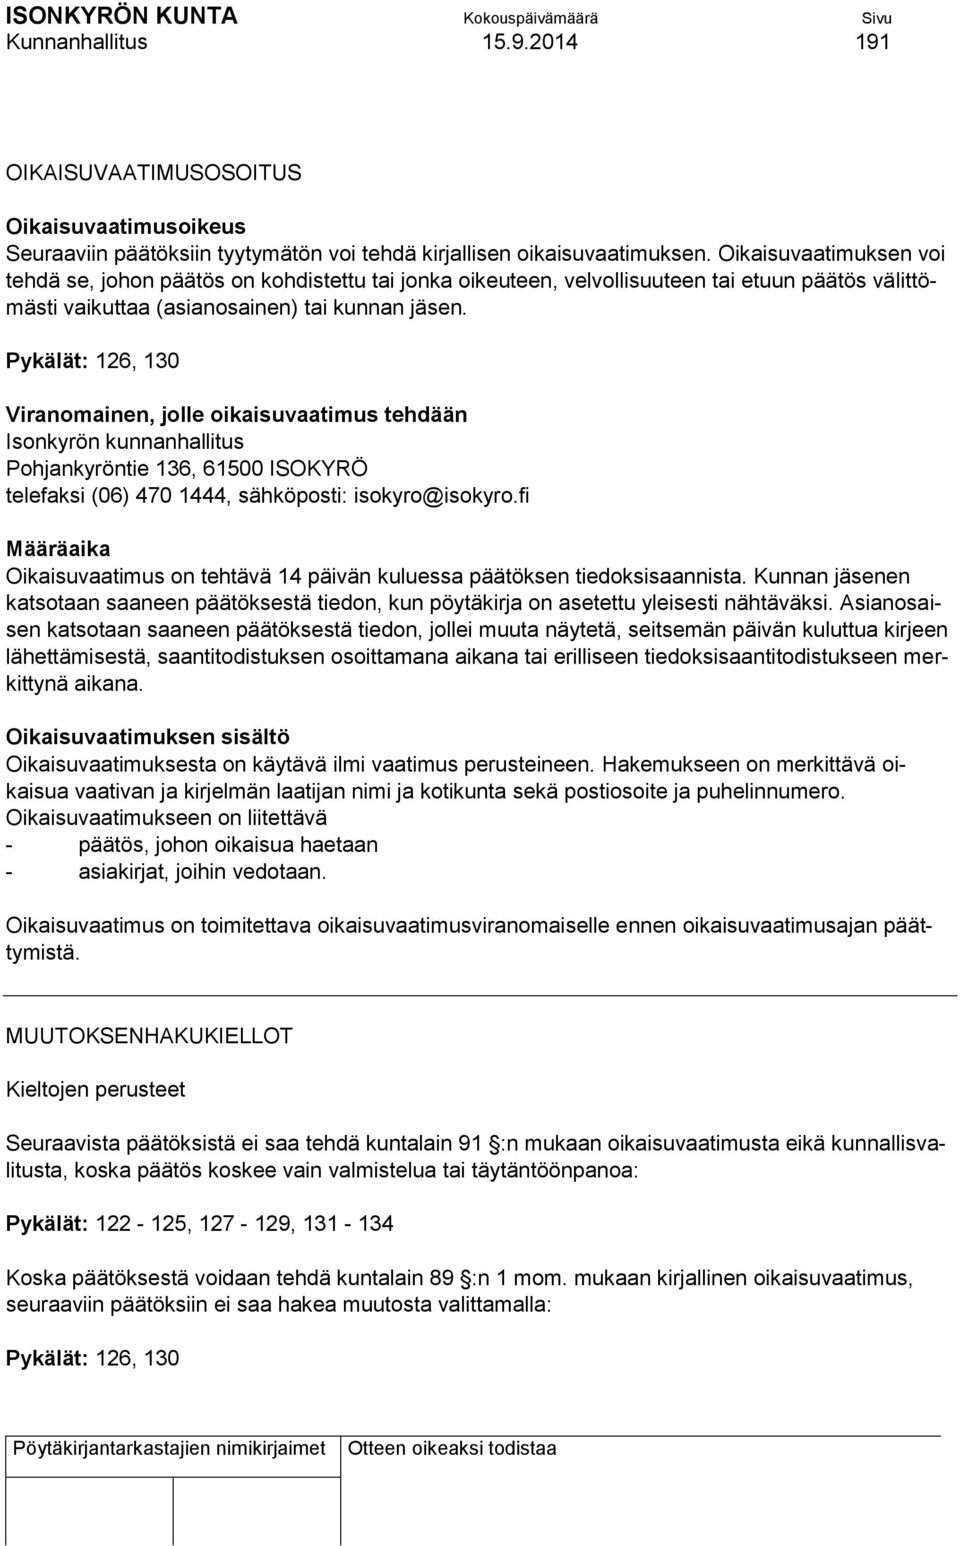 Pykälät: 126, 130 Viranomainen, jolle oikaisuvaatimus tehdään Isonkyrön kunnanhallitus Pohjankyröntie 136, 61500 ISOKYRÖ telefaksi (06) 470 1444, sähköposti: isokyro@isokyro.